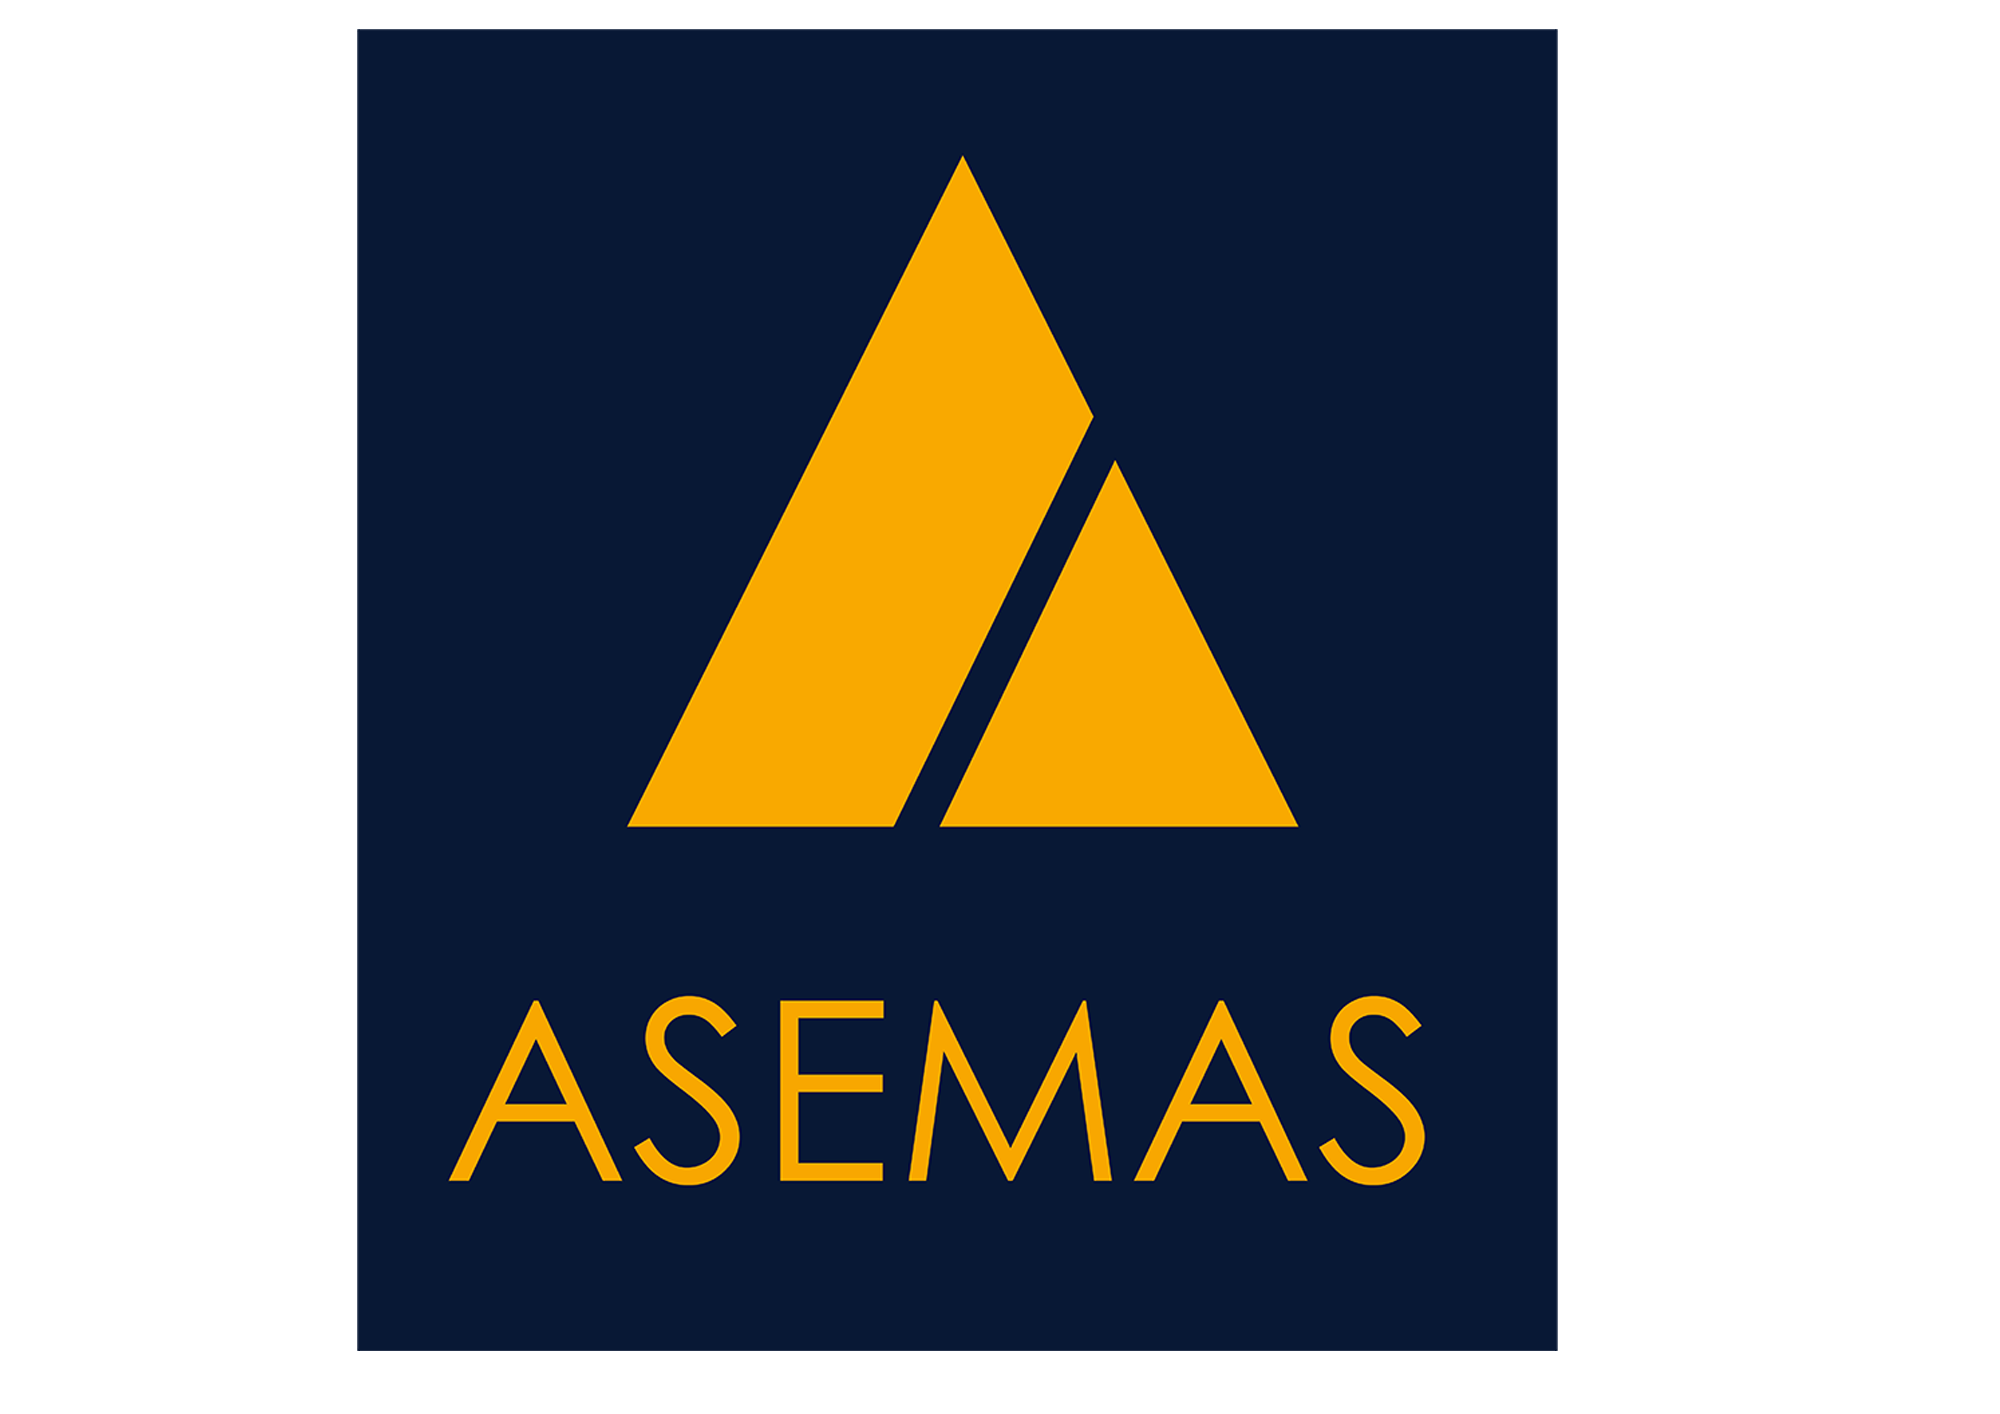 ASEMAS logos2